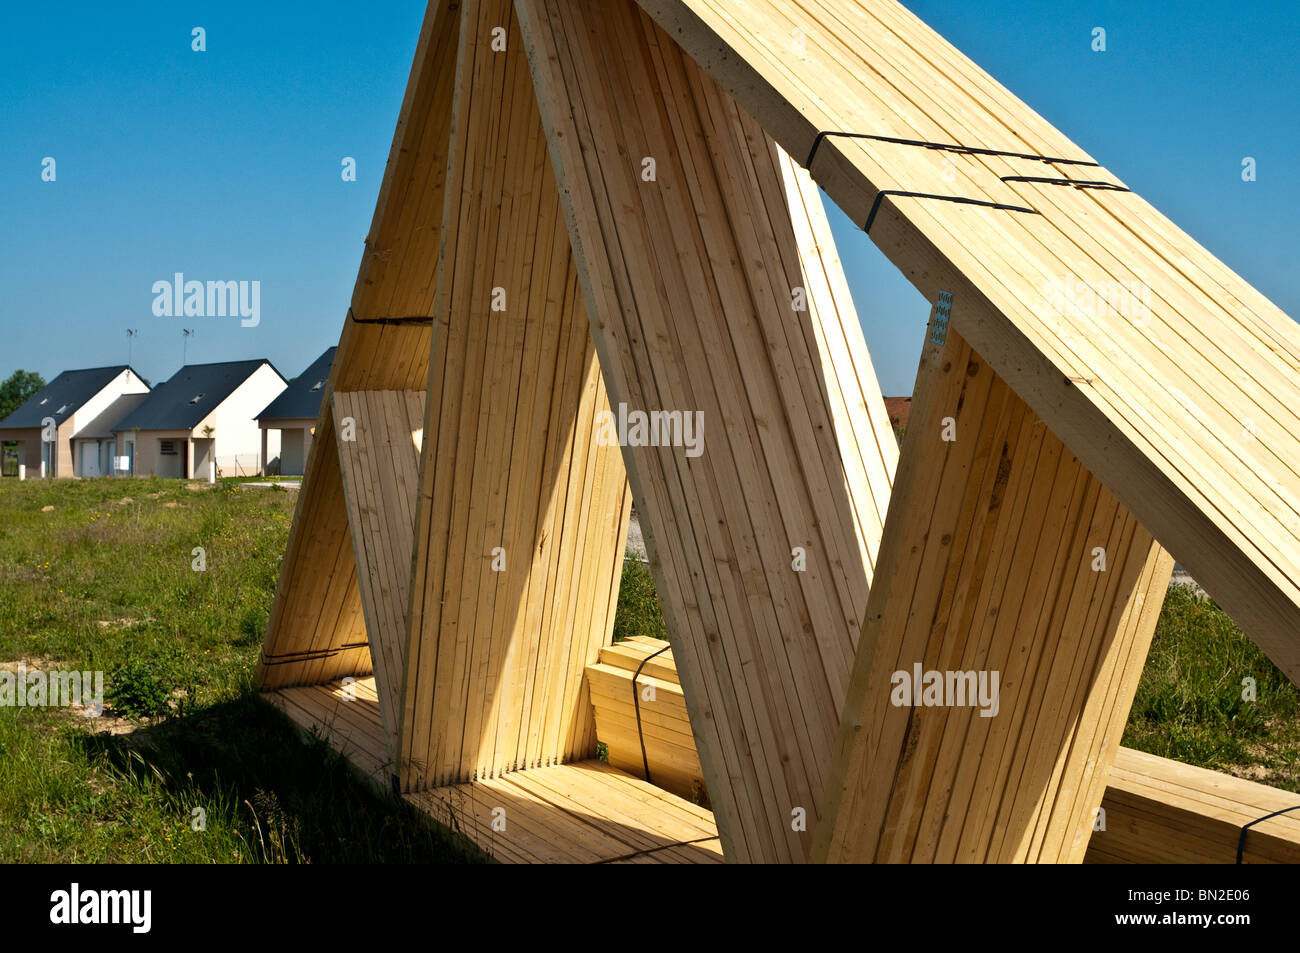 Fermes de toit en bois de la construction de logements nouveaux sur chantier - Indre-et-Loire, France. Banque D'Images